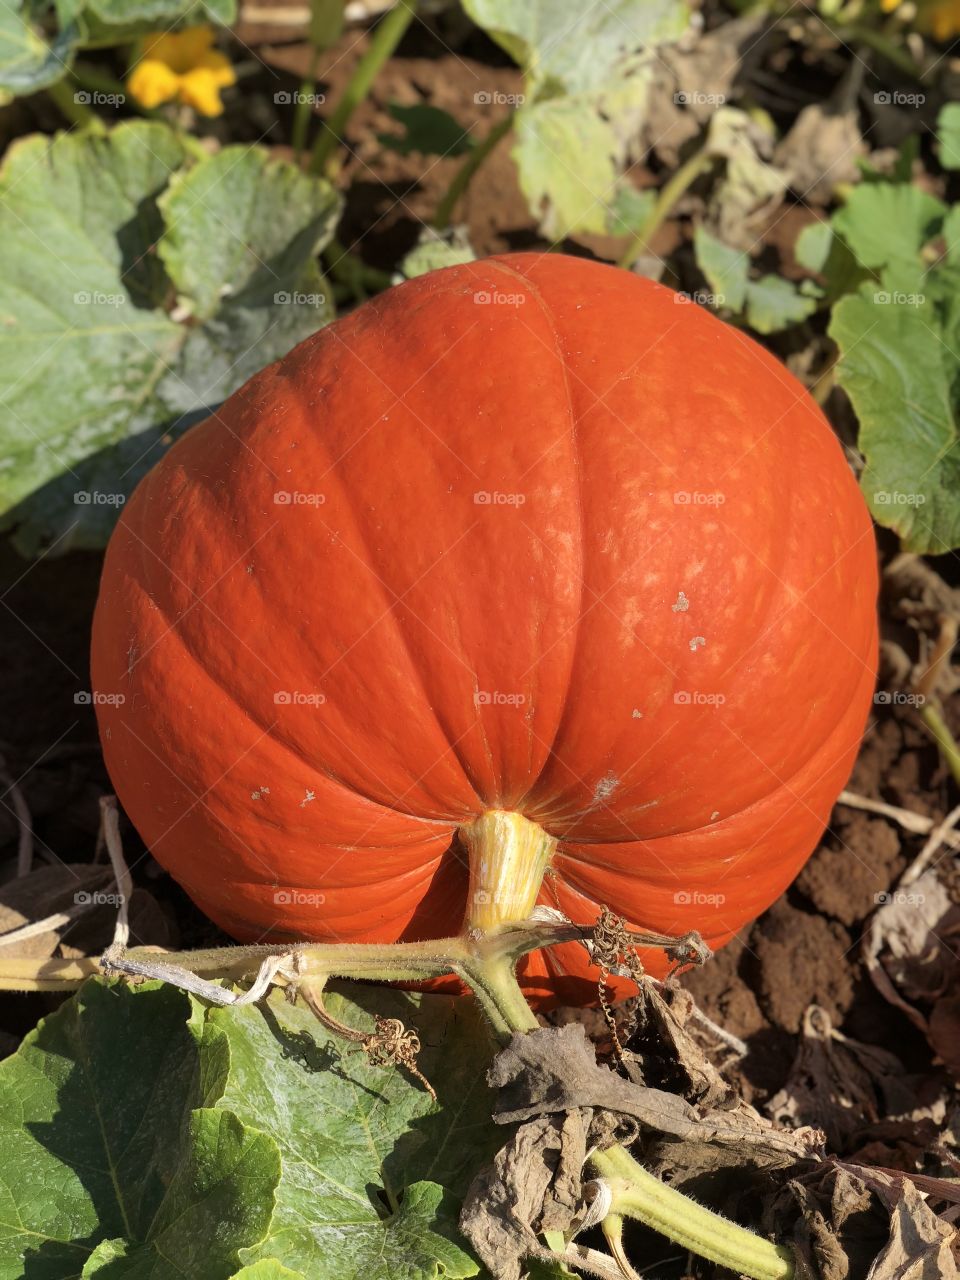 Pumpkin patch 